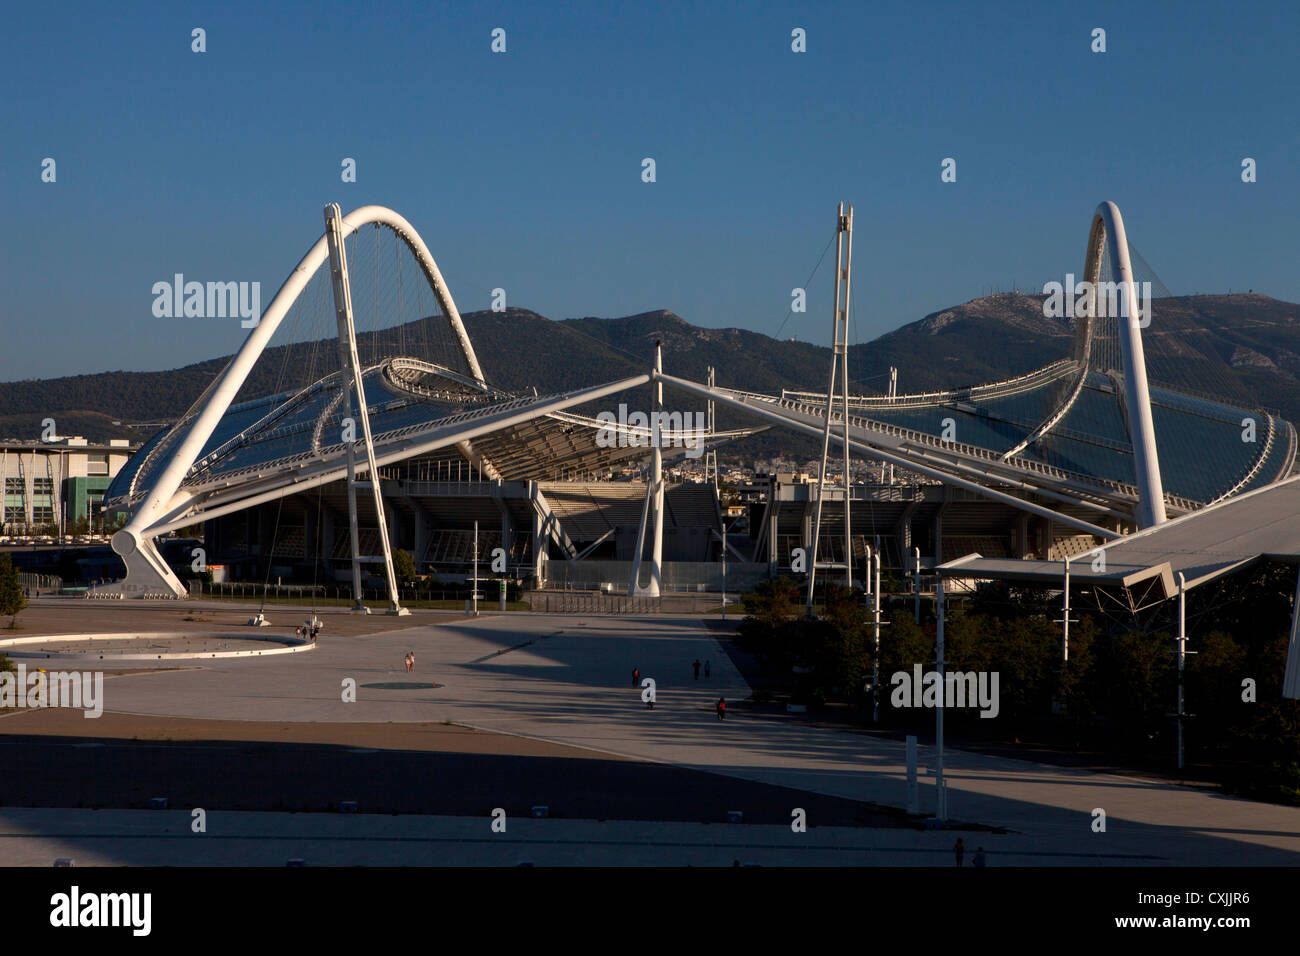 Ática, Grecia, Atenas, Maroussi, OAKA Olympic Stadium construido en 2004 por el arquitecto Santiago Calatrava Foto de stock